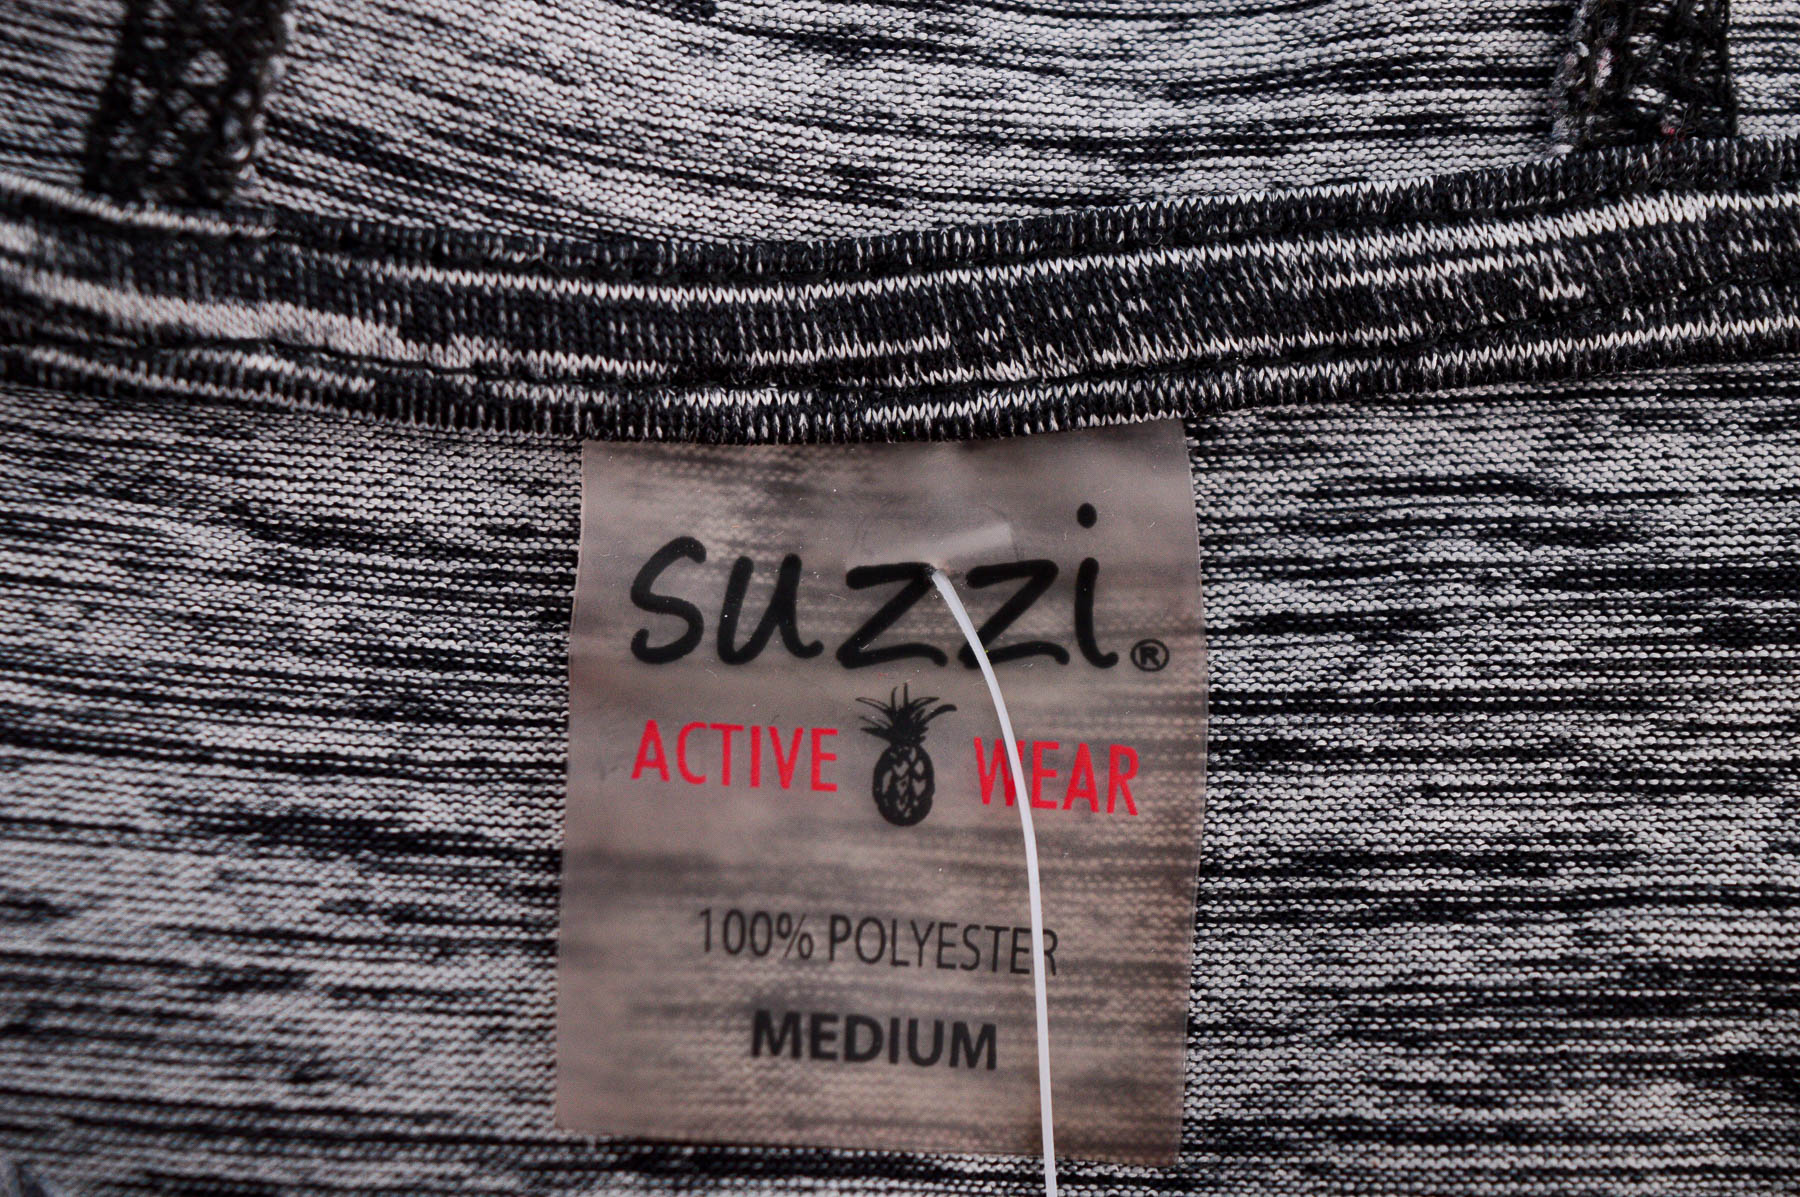 Γυναικεία αθλητική μπλούζα - Suzzi Activewear - 2